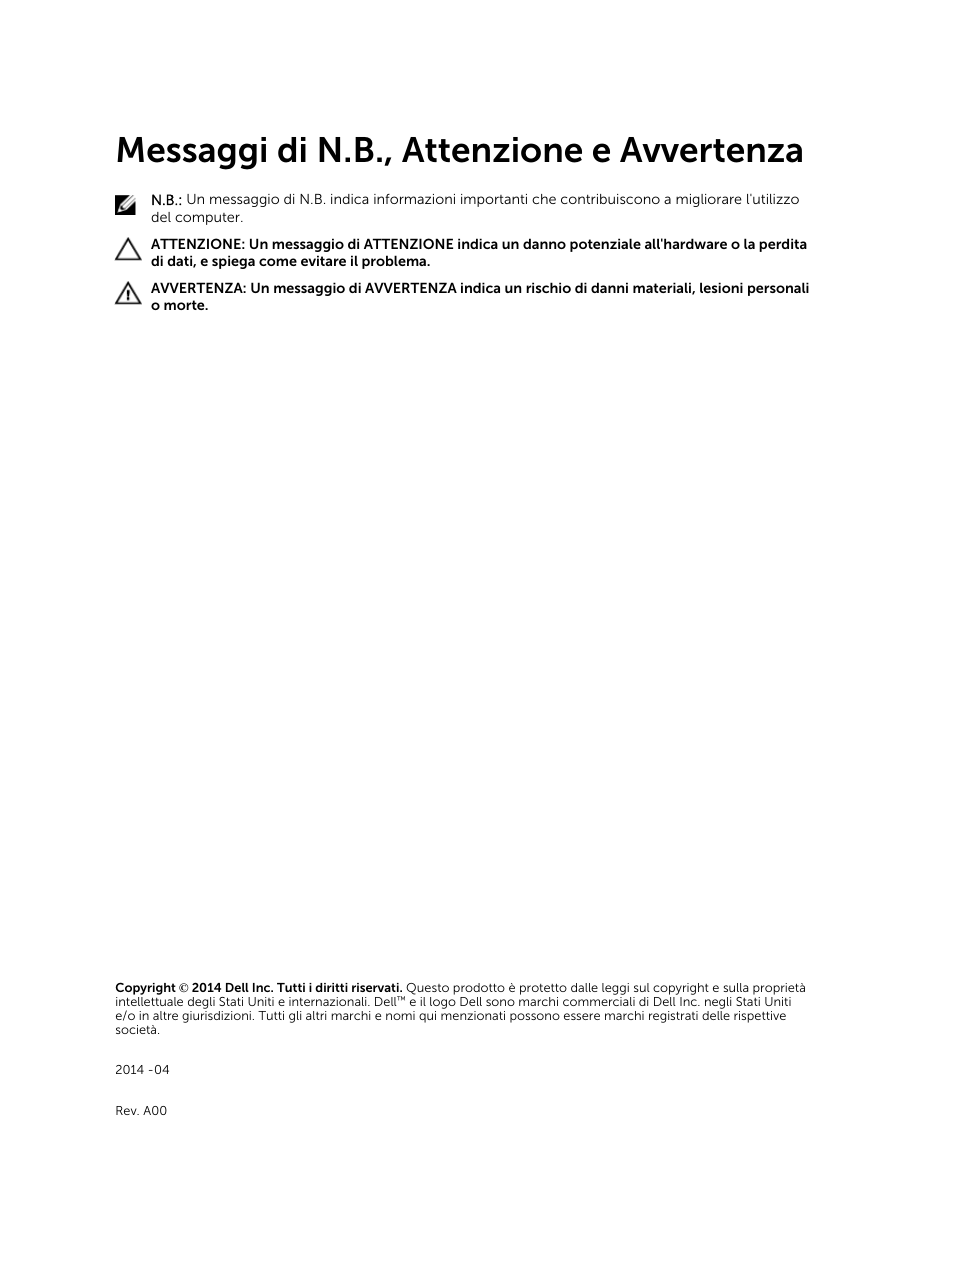 Messaggi di n.b., attenzione e avvertenza | Dell Precision M2800 (Early 2014) Manuale d'uso | Pagina 2 / 81